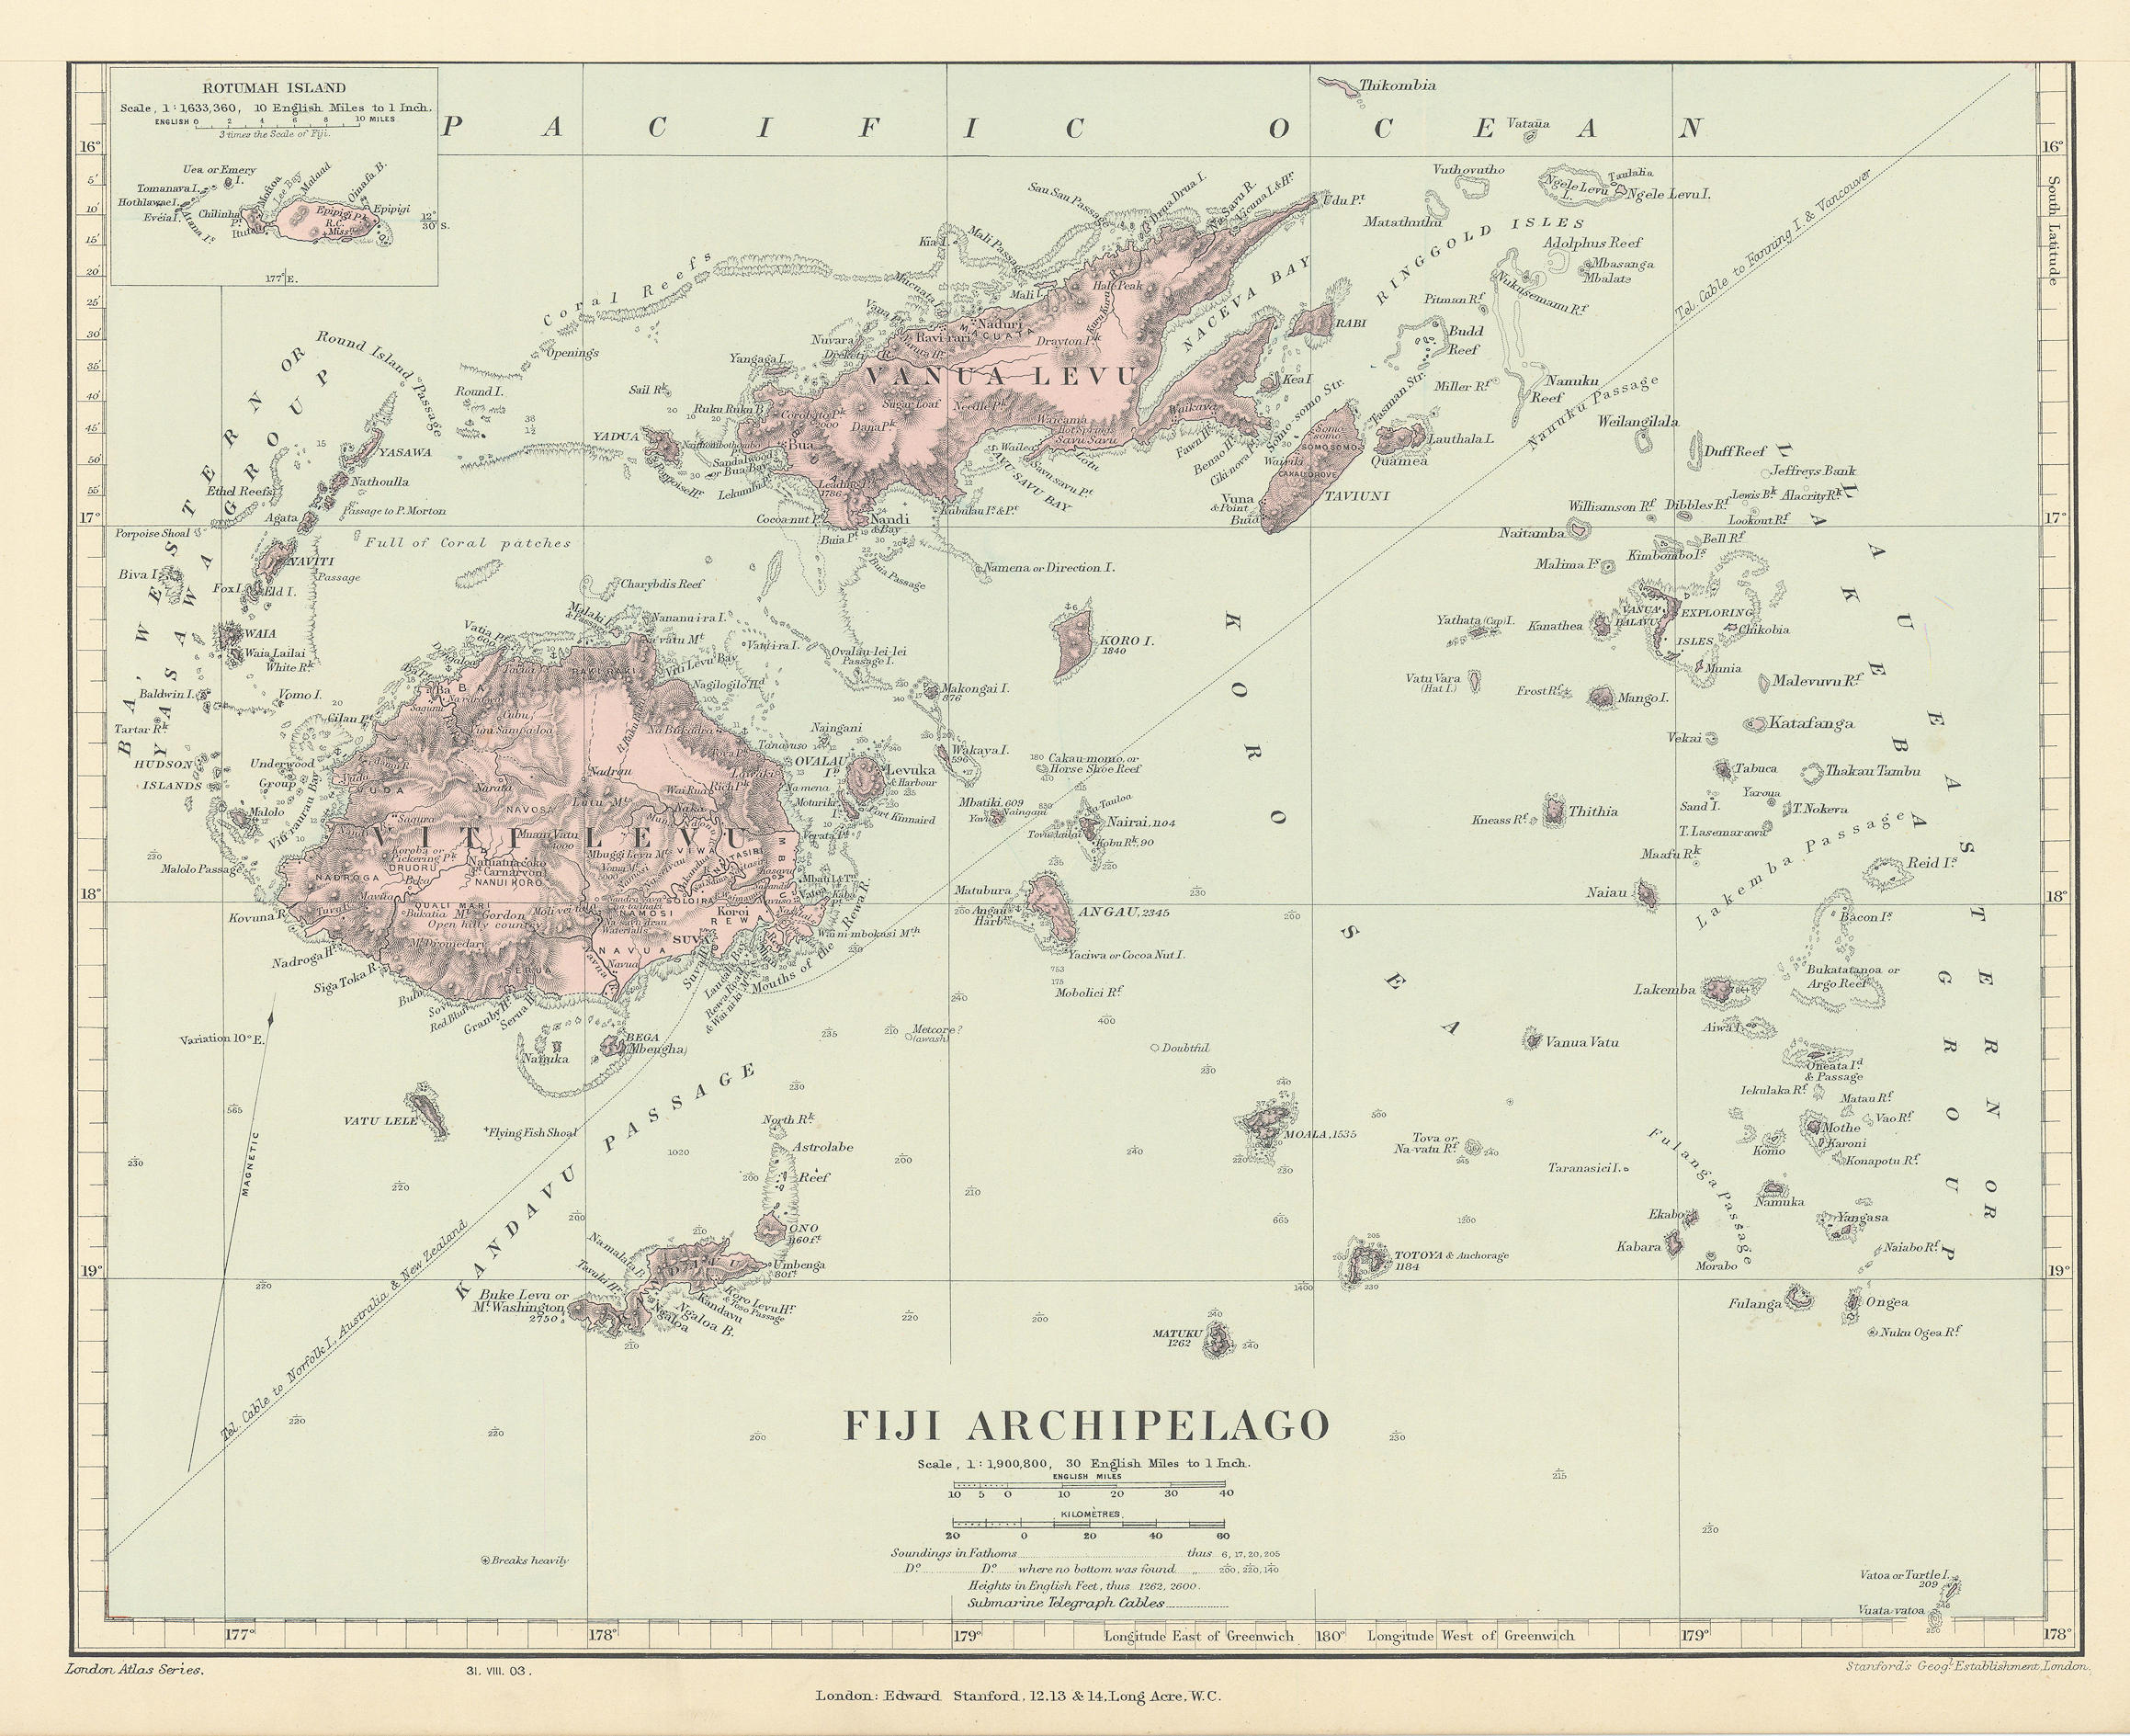 Tasmania / Fiji Archipelago. Vanua Levu. Viti Levu. STANFORD 1904 old map